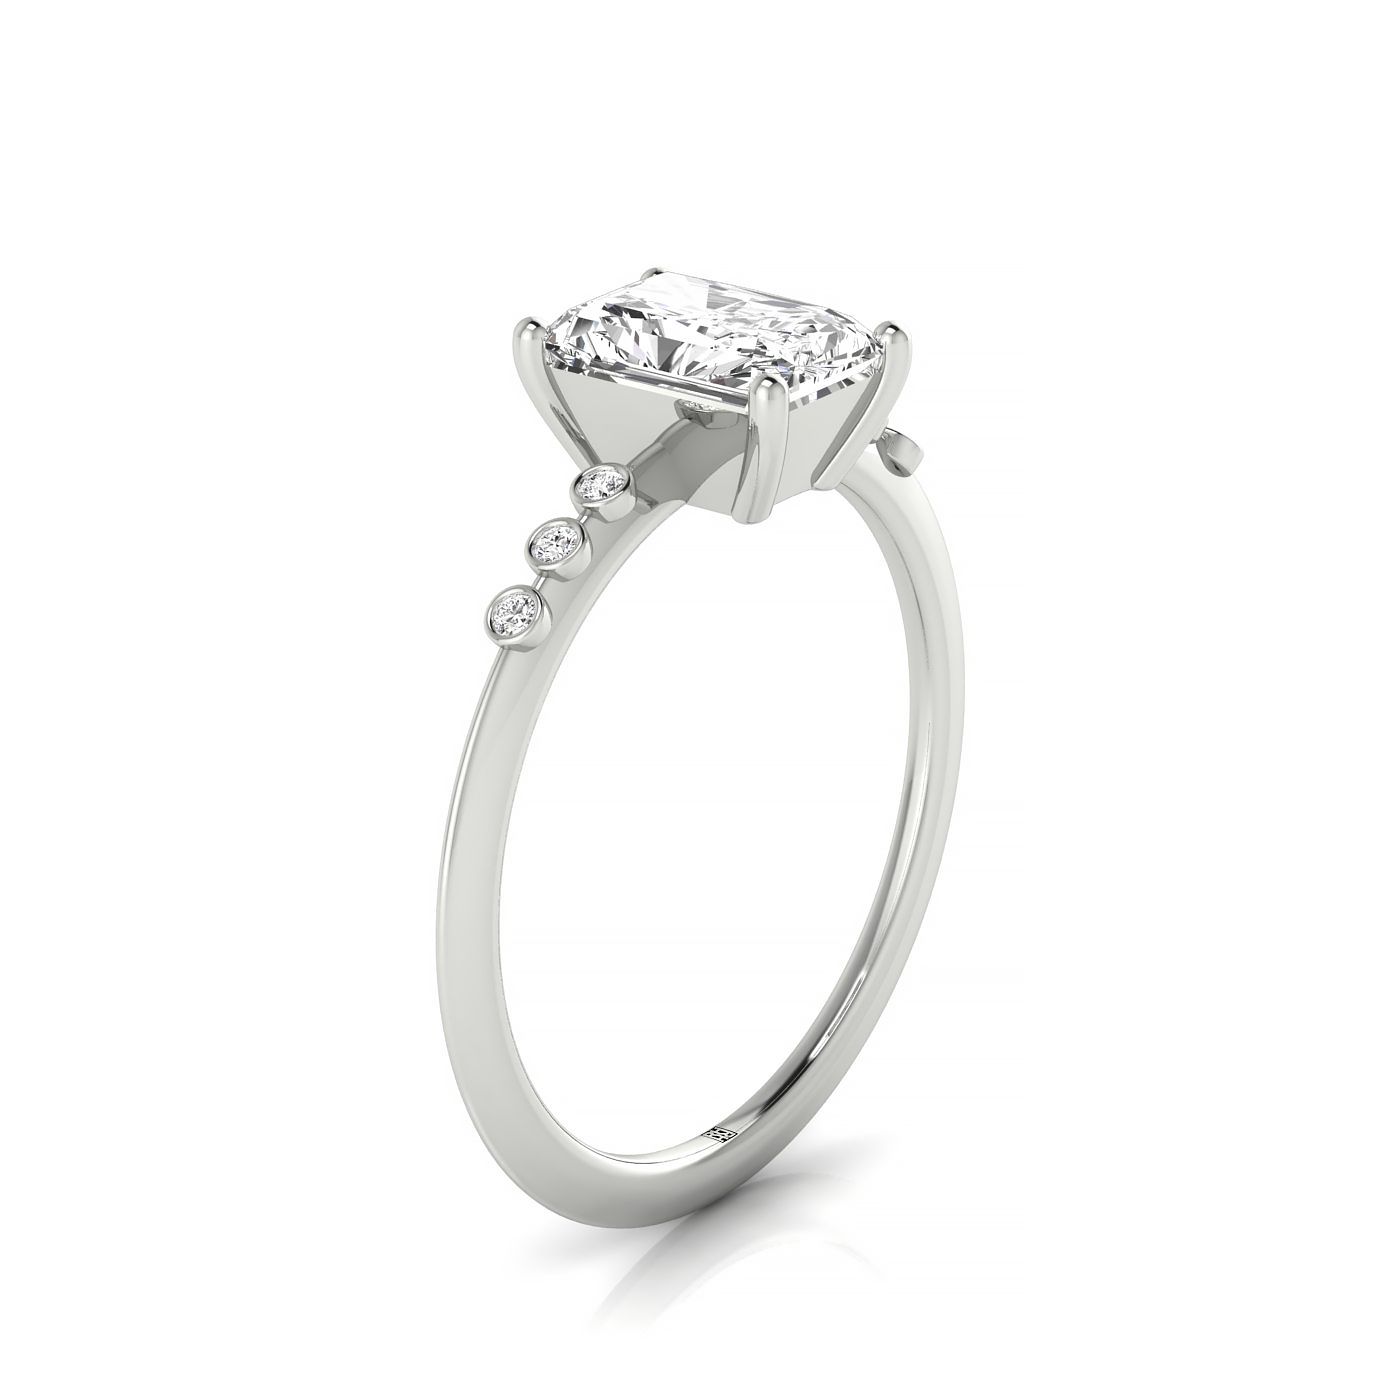 Plat Radiant Engagement Ring With 6 Bezel Set Round Diamonds On Shank